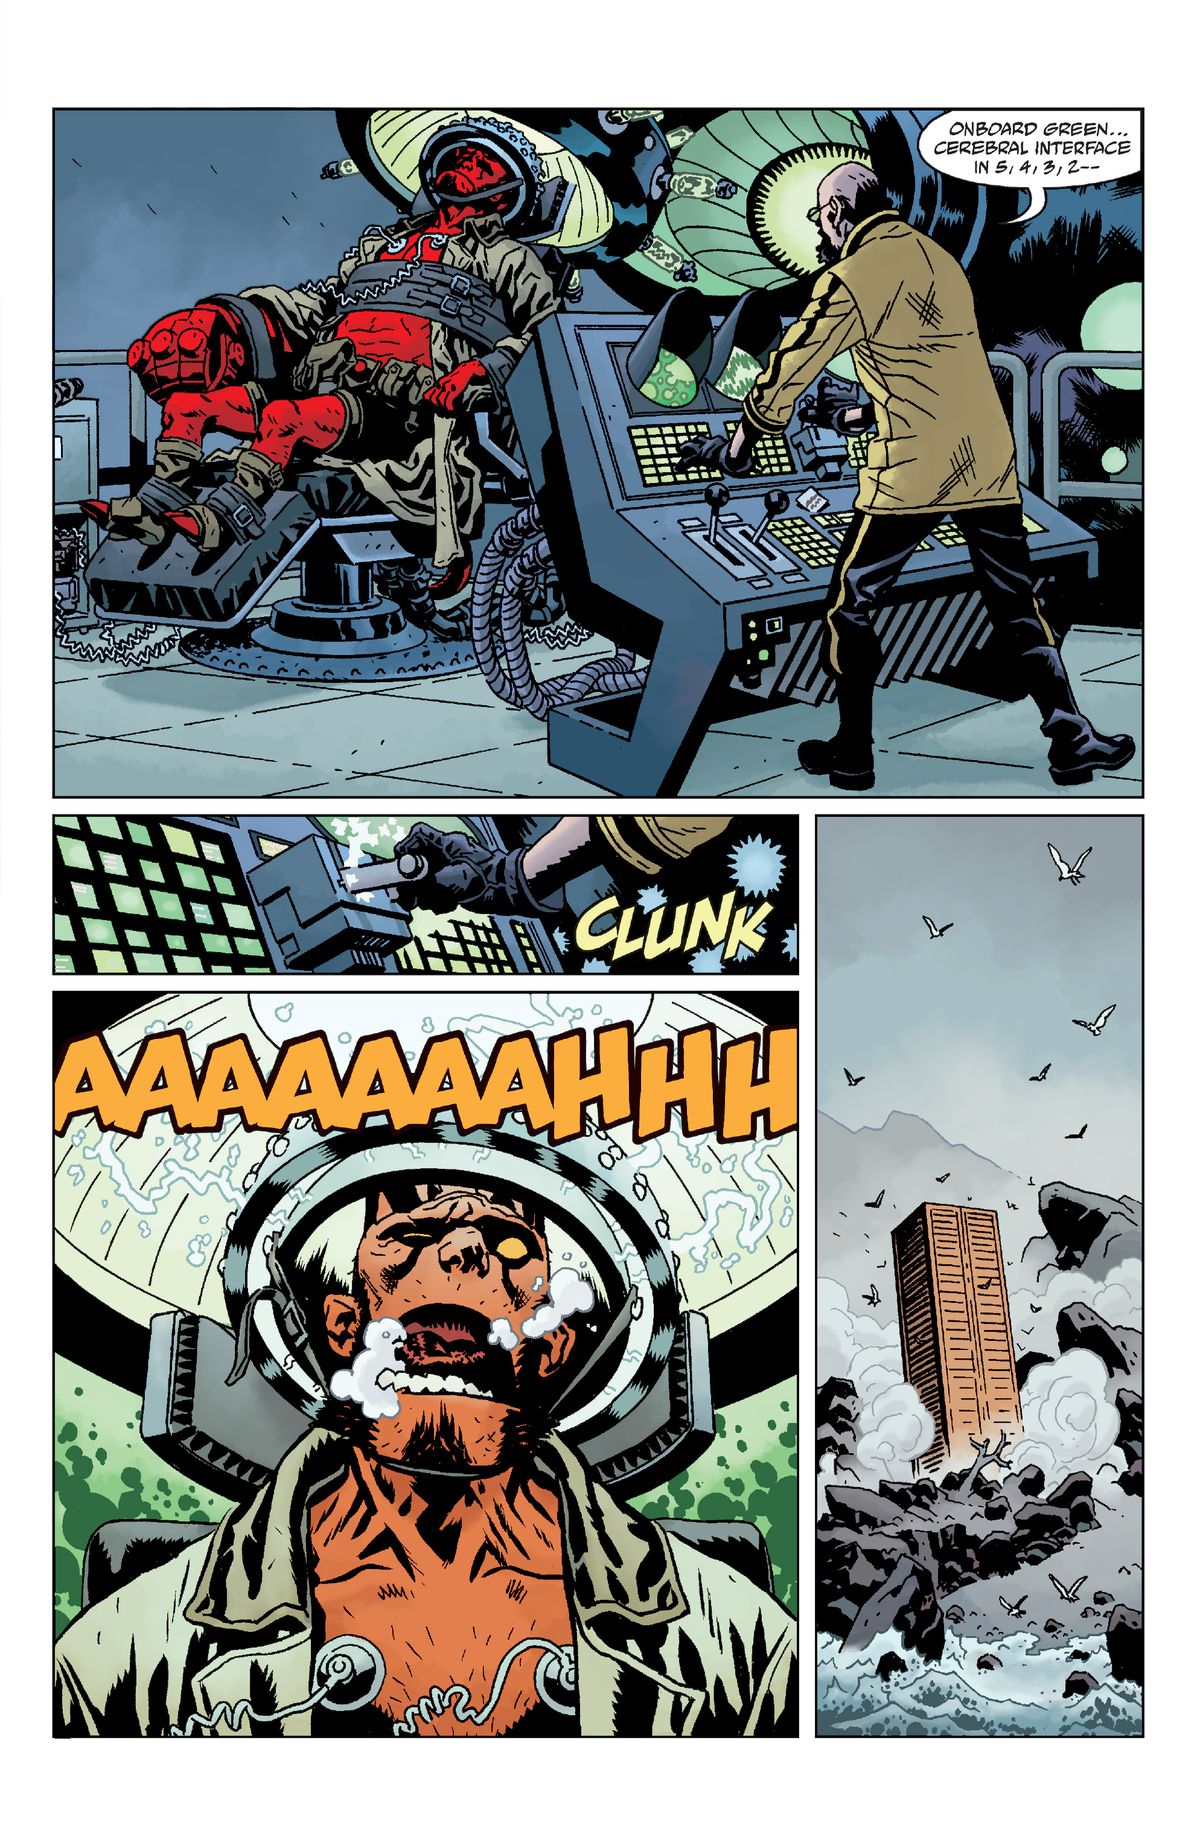 Hellboy skriker när forskare drar i en stor spak i Giant Robot Hellboy.